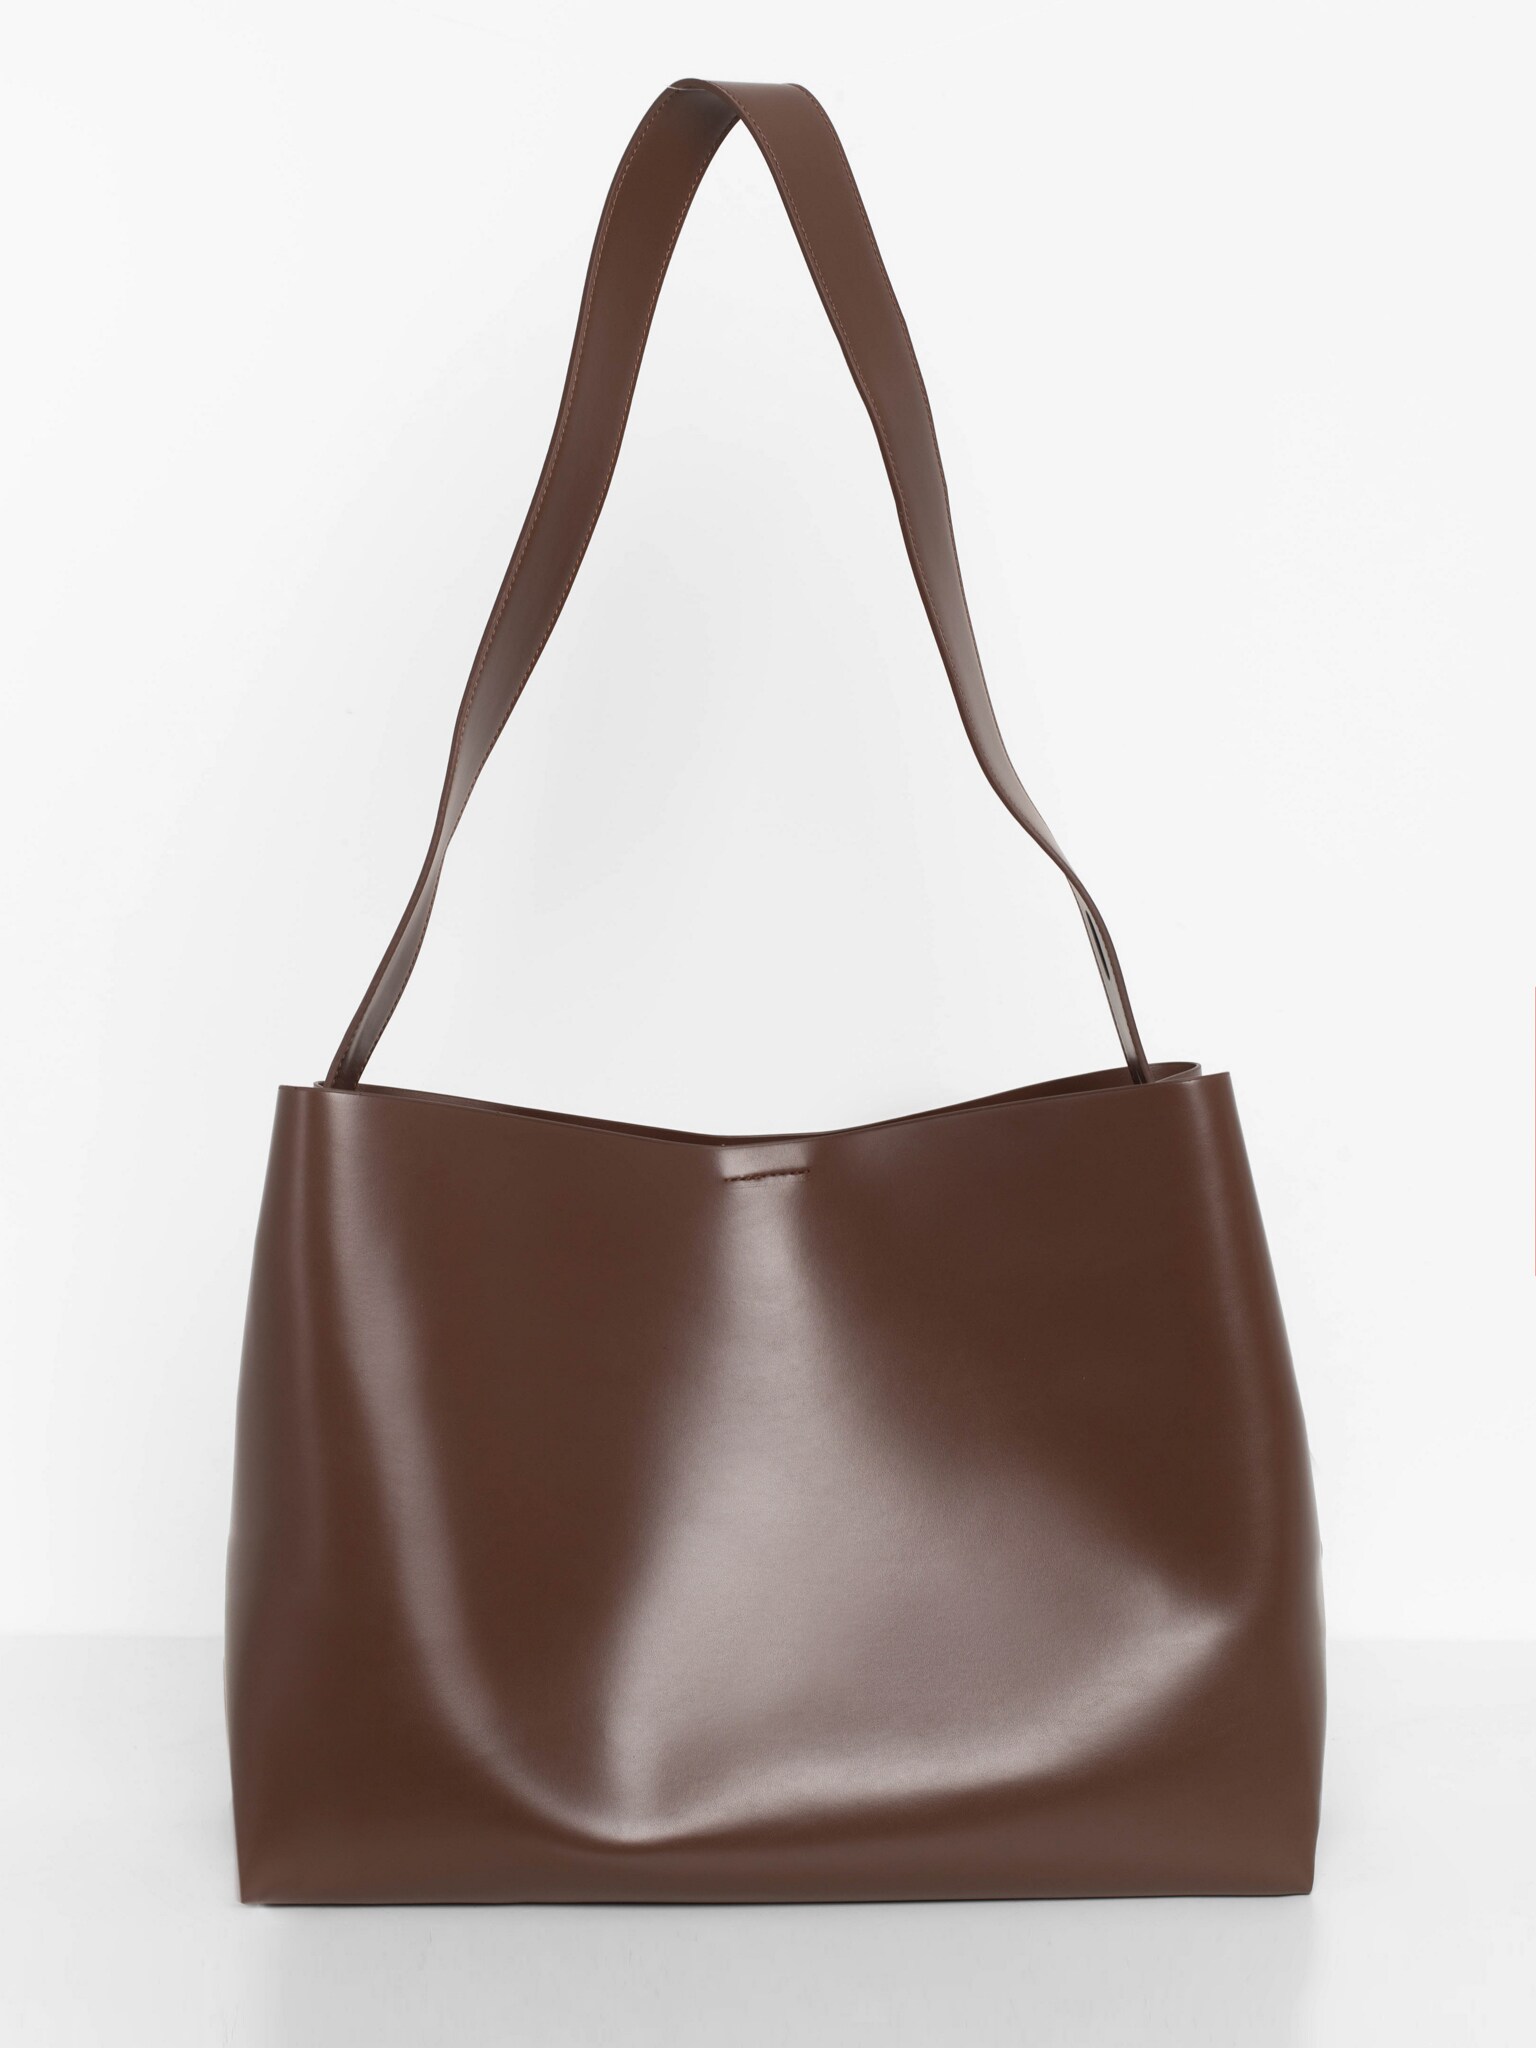 Прямоугольная сумка мягкой формы с широким ремнем